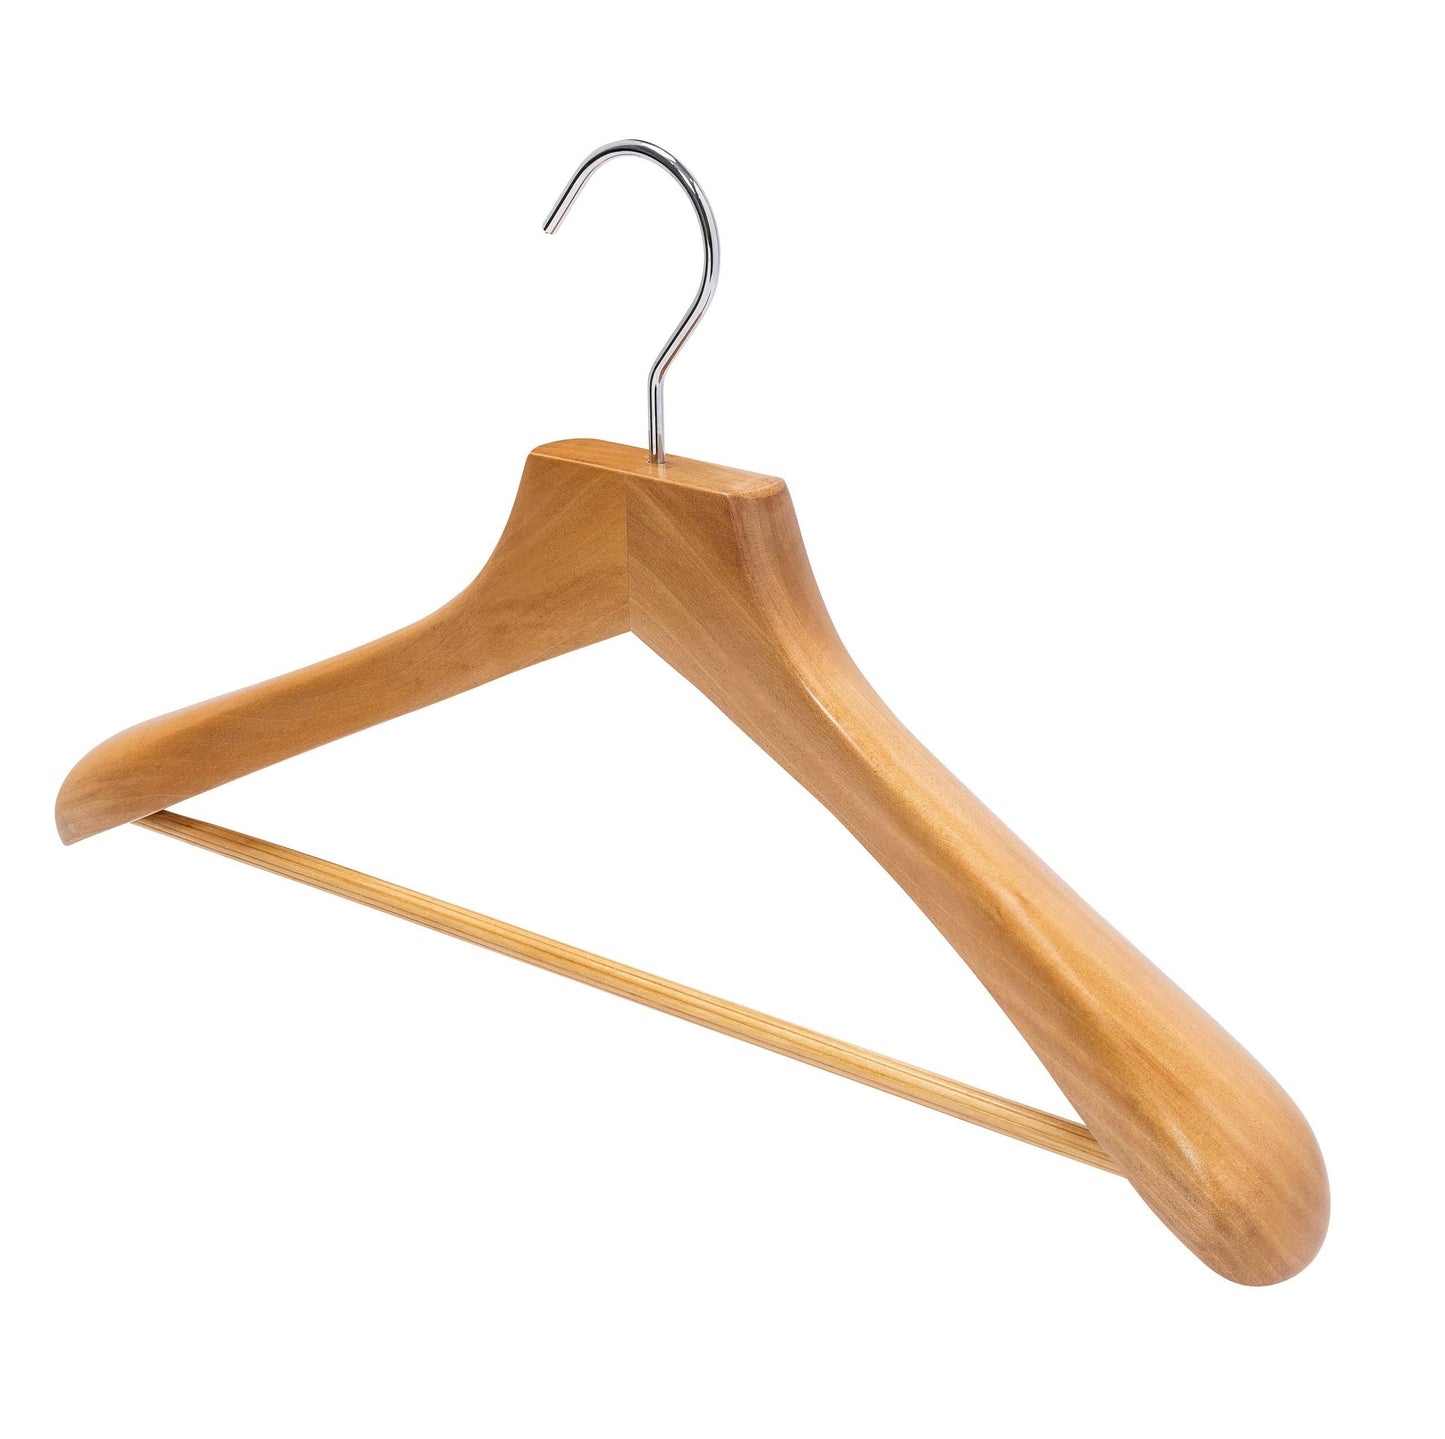 Deluxe Beech Wooden Coat Hanger w/Non-Slip Bar - 46cm X 50mm Thick (Sold in 2/6/10/20) - Hangersforless